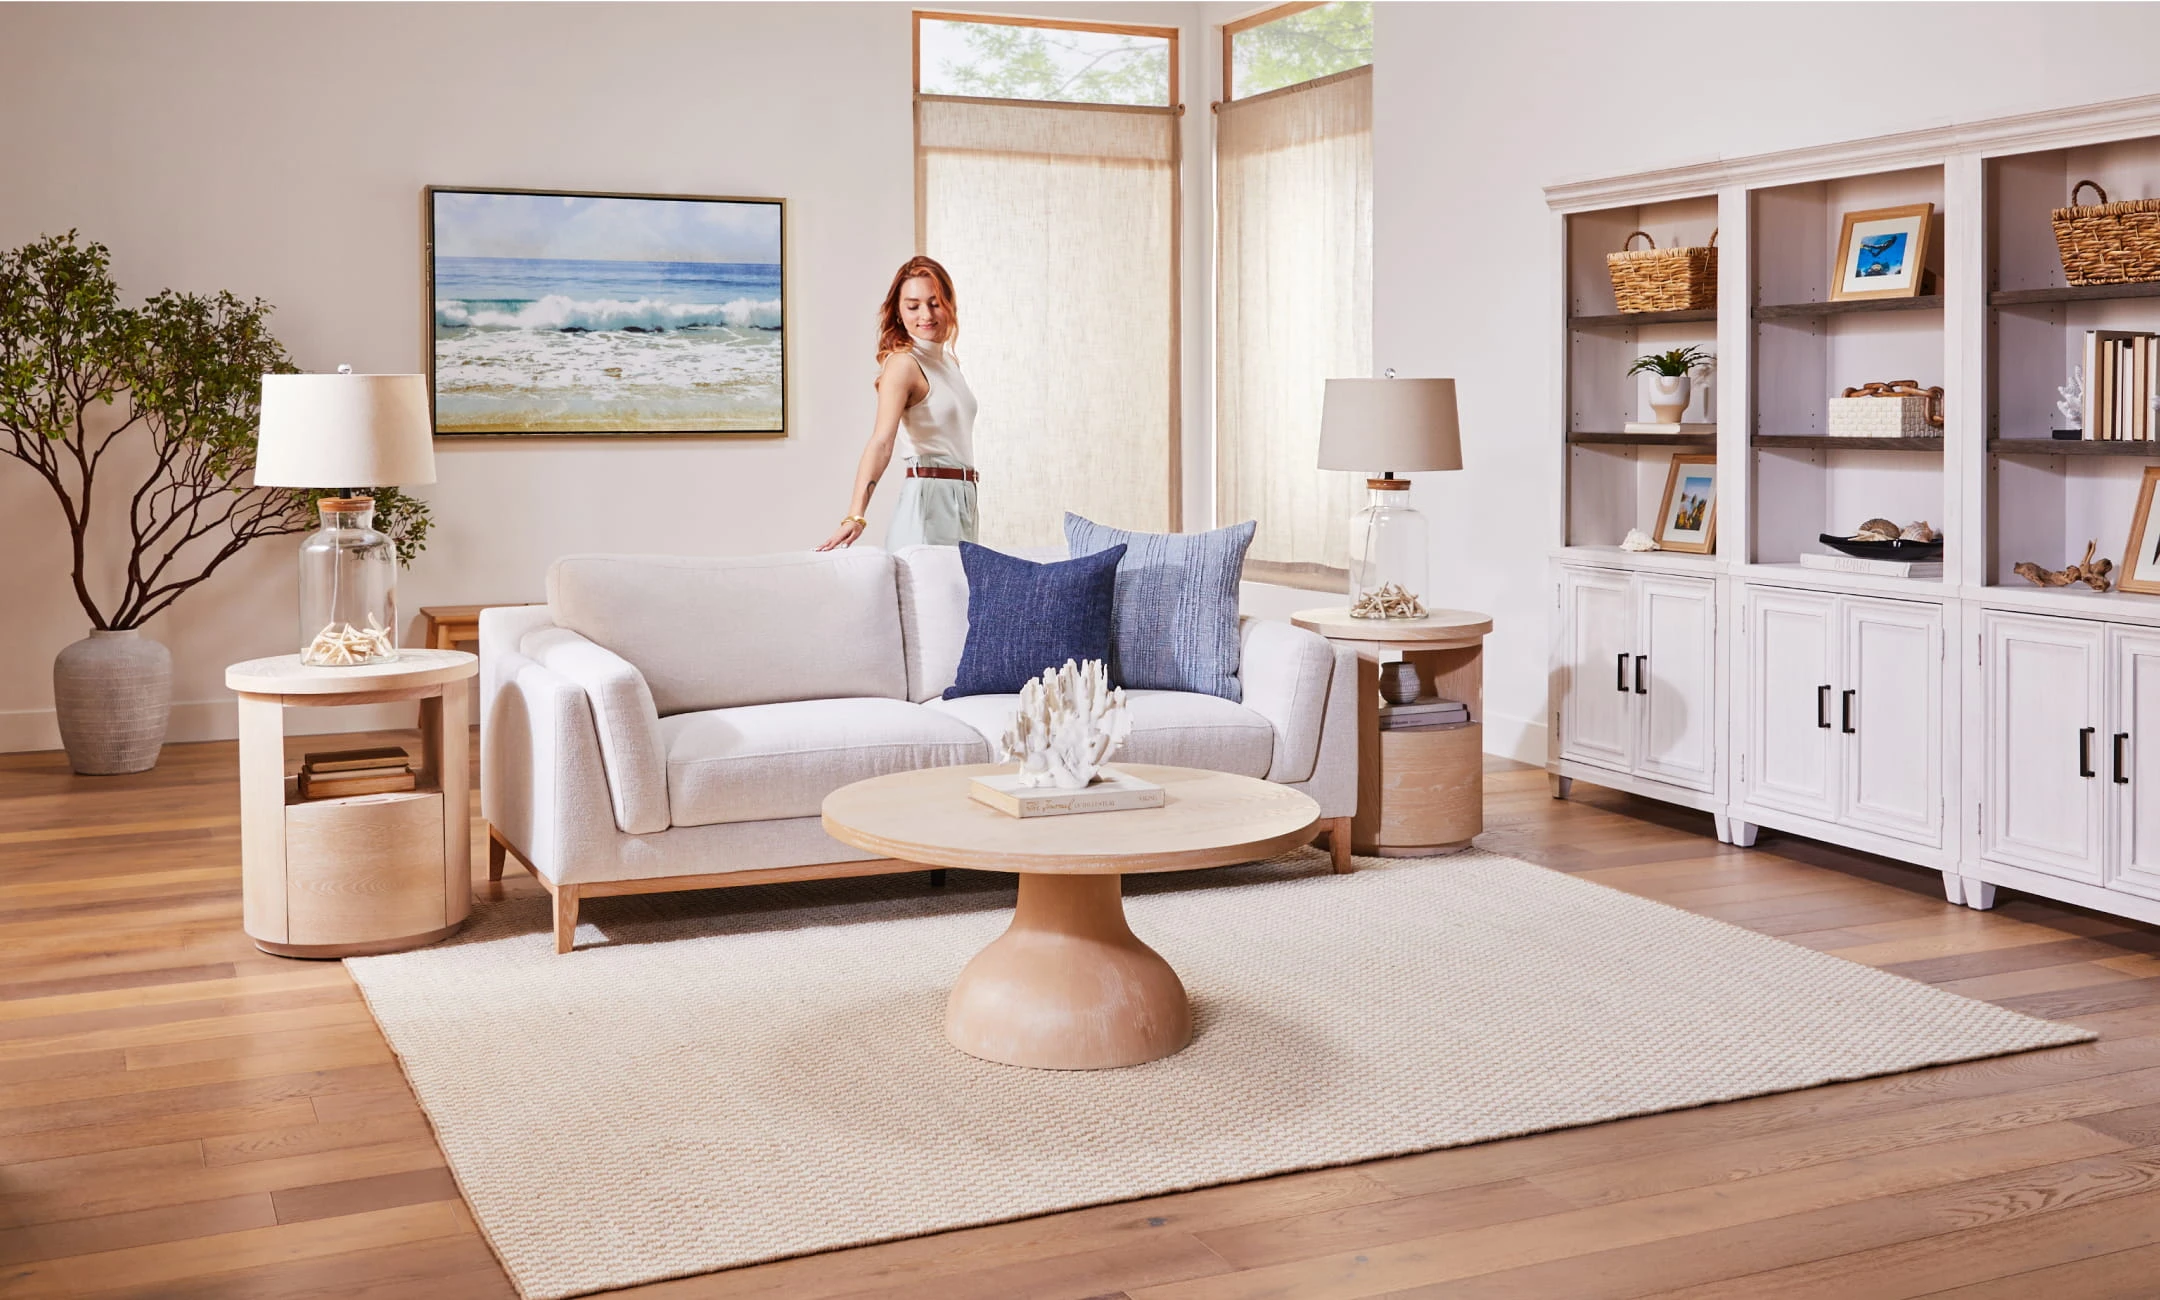 Living room with coastal home decor